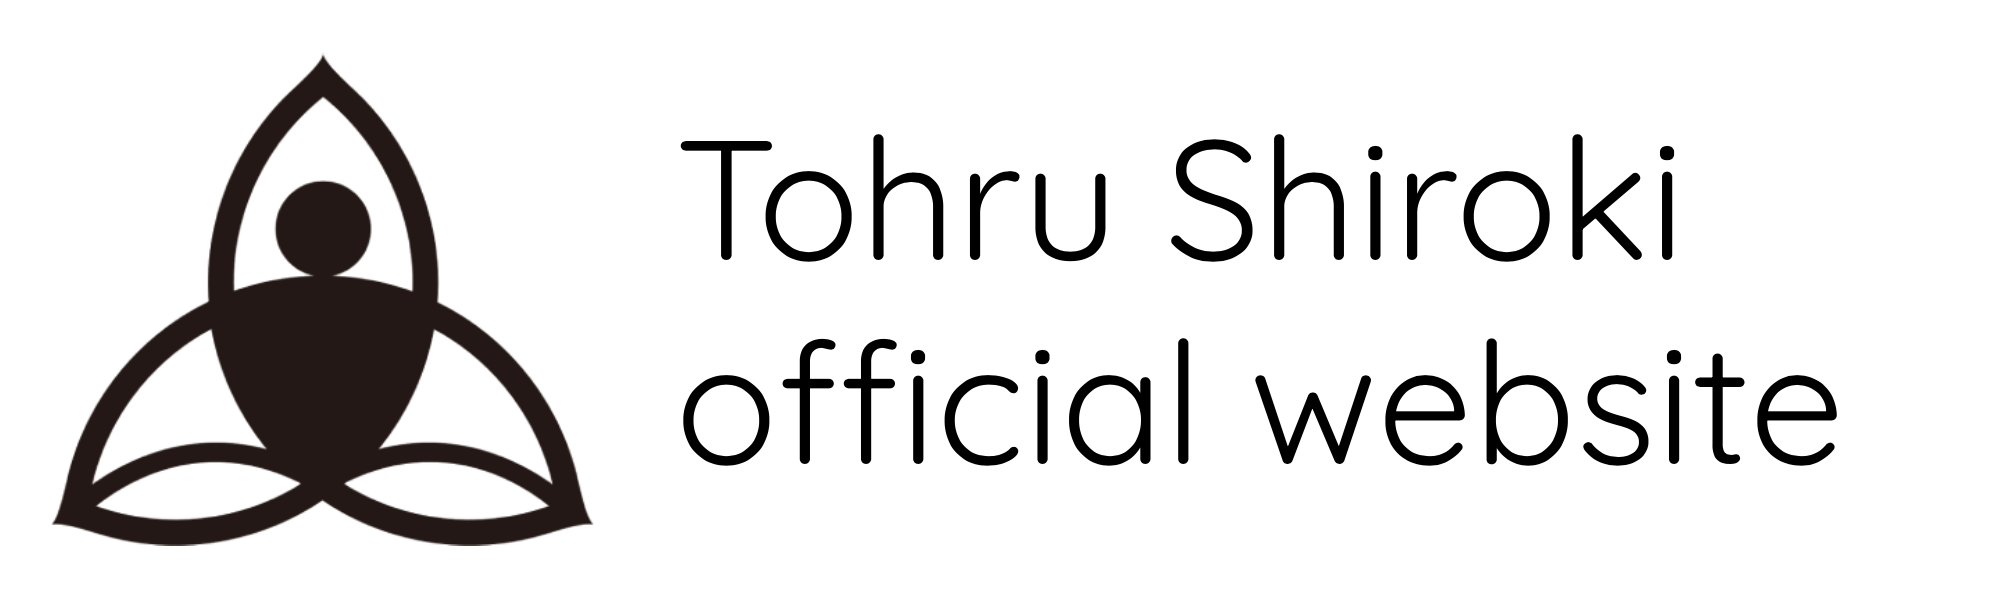 城木徹オフィシャルサイト Tohru Shiroki official website